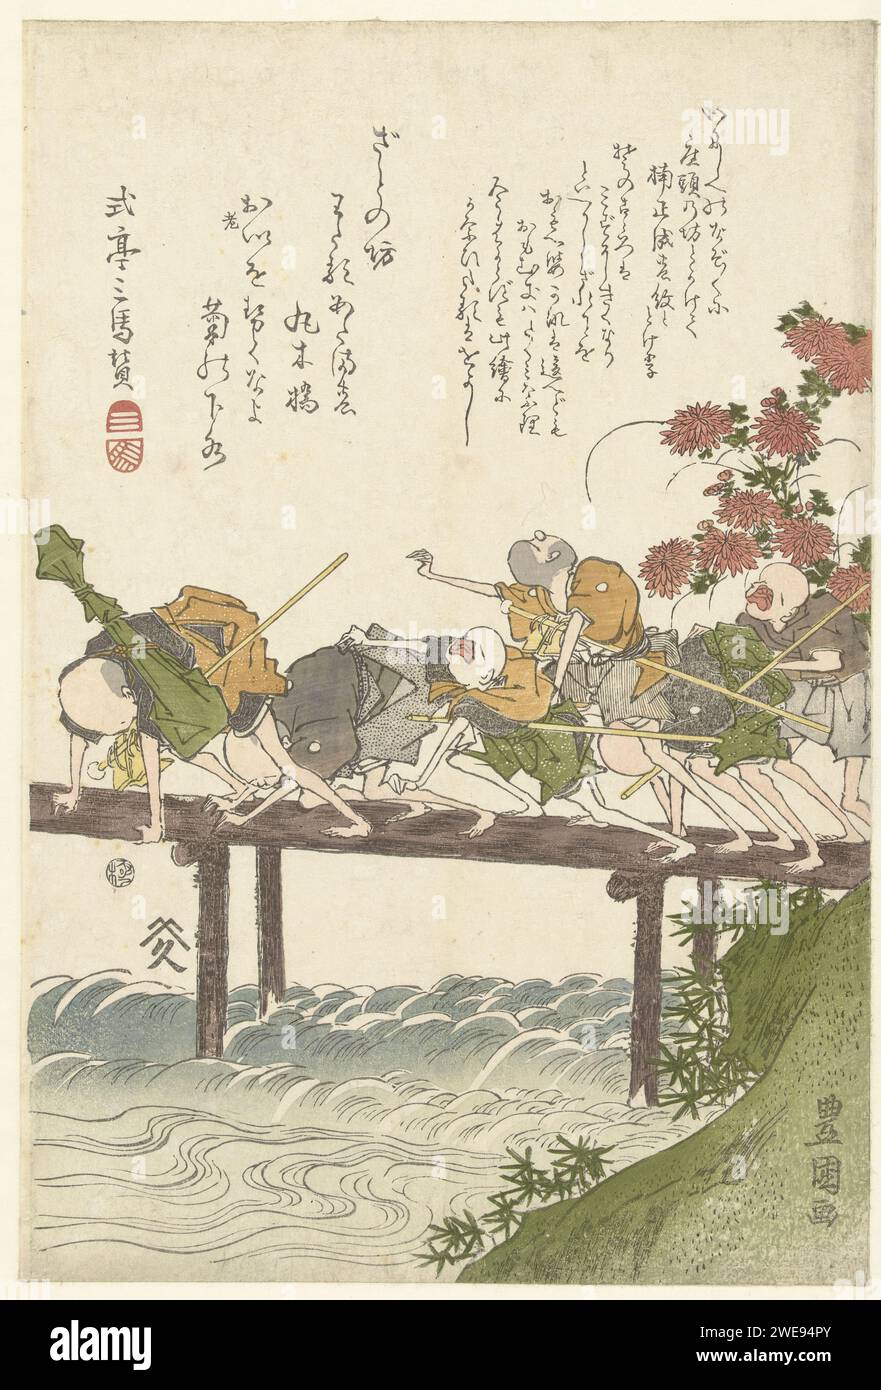 ZES BLINDE MASSEURS OP EEN BRUG., Utagawa toyokuni (i), 1803-1807 impression six aveugles avec des bâtons, traversant un pont en bois ; chrysanthèmes rouges fleuris sur la rive. Imprimé humoristique basé sur la double signification des mots japonais 'Mizu' ('eau' et 'ne pas voir') et 'Kiku' ('entendre' et 'Chrysanthemum'). Japon papier nishiki-e / couleur bois gravé aveugle, cécité - AA - métaphoriquement aveugle. plantes ; végétation (+ fleurs, floraison, floraison). pont Banque D'Images